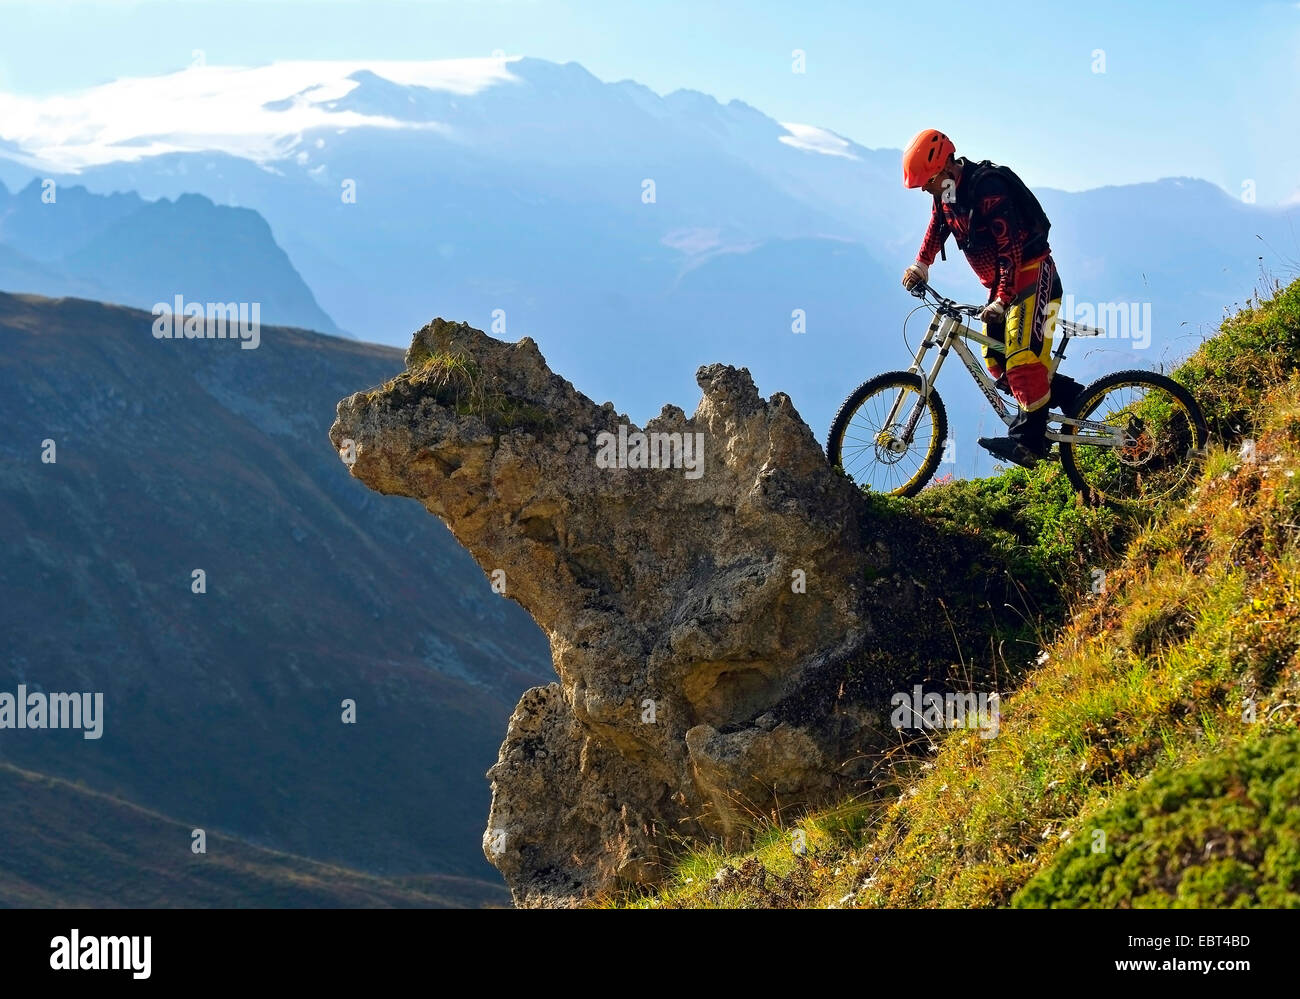 Mountainbiker dans la montagne, France, Savoie Banque D'Images